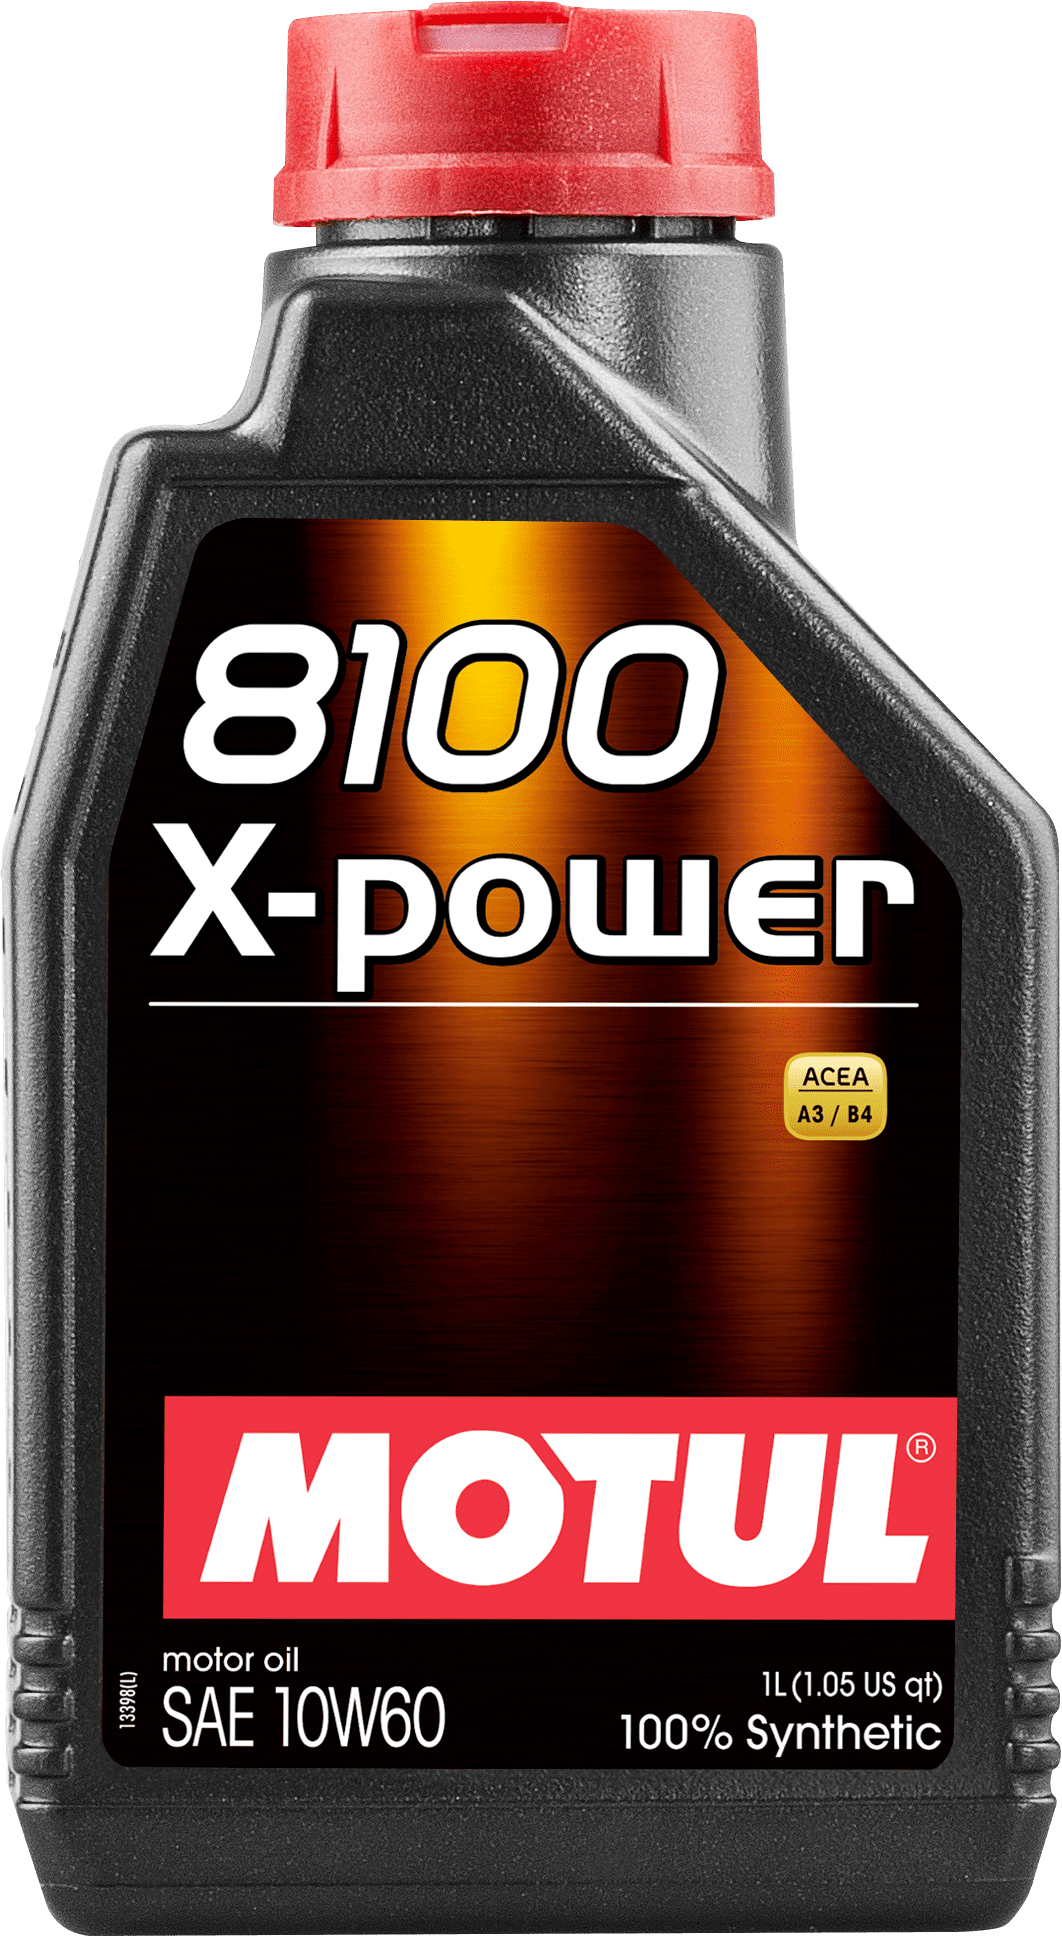 106142-1 100% synthetisch en hoogwaardig motorsmeermiddel.